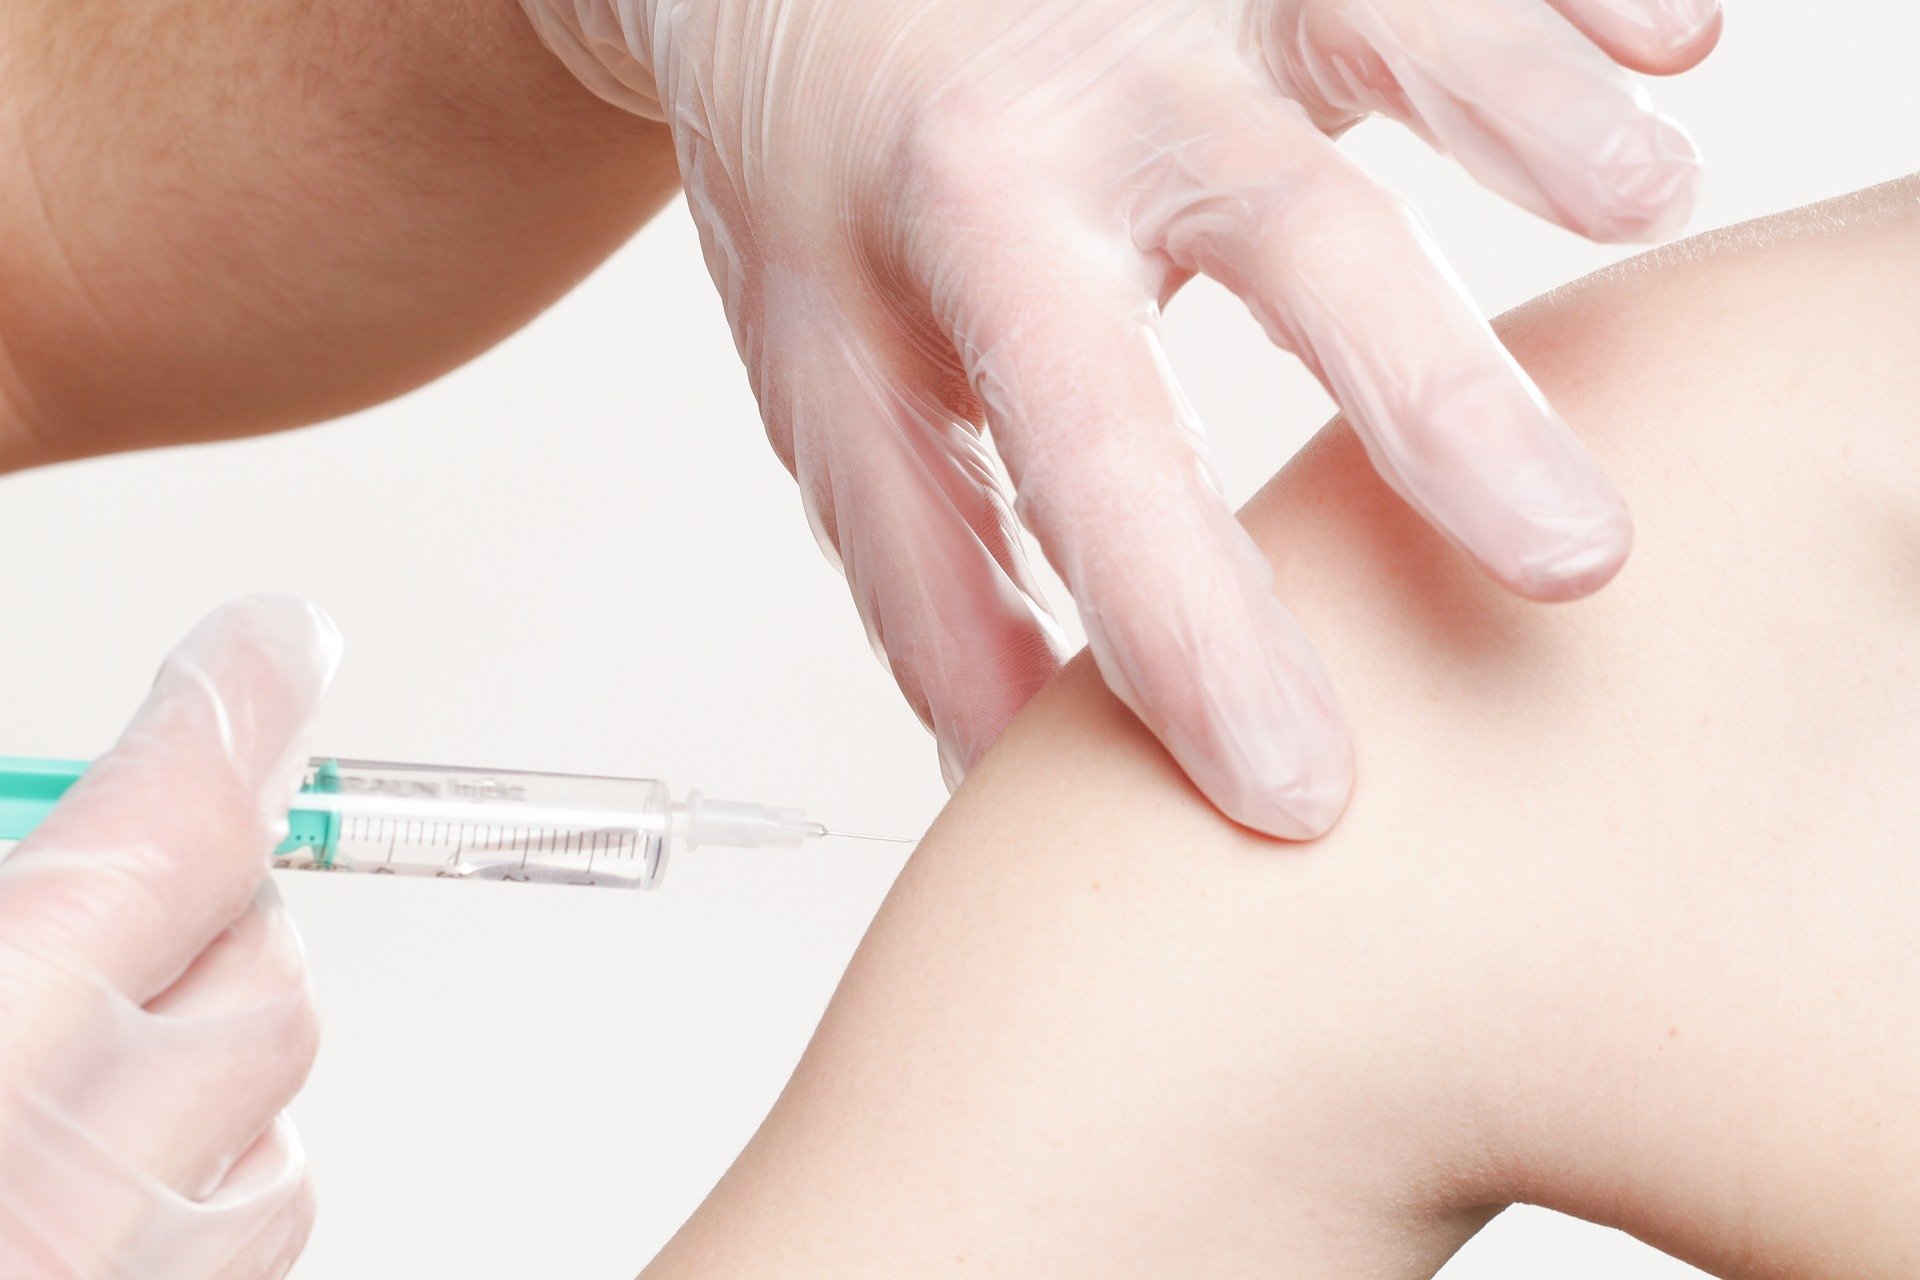 Letos se očkování proti chřipce velmi doporučuje